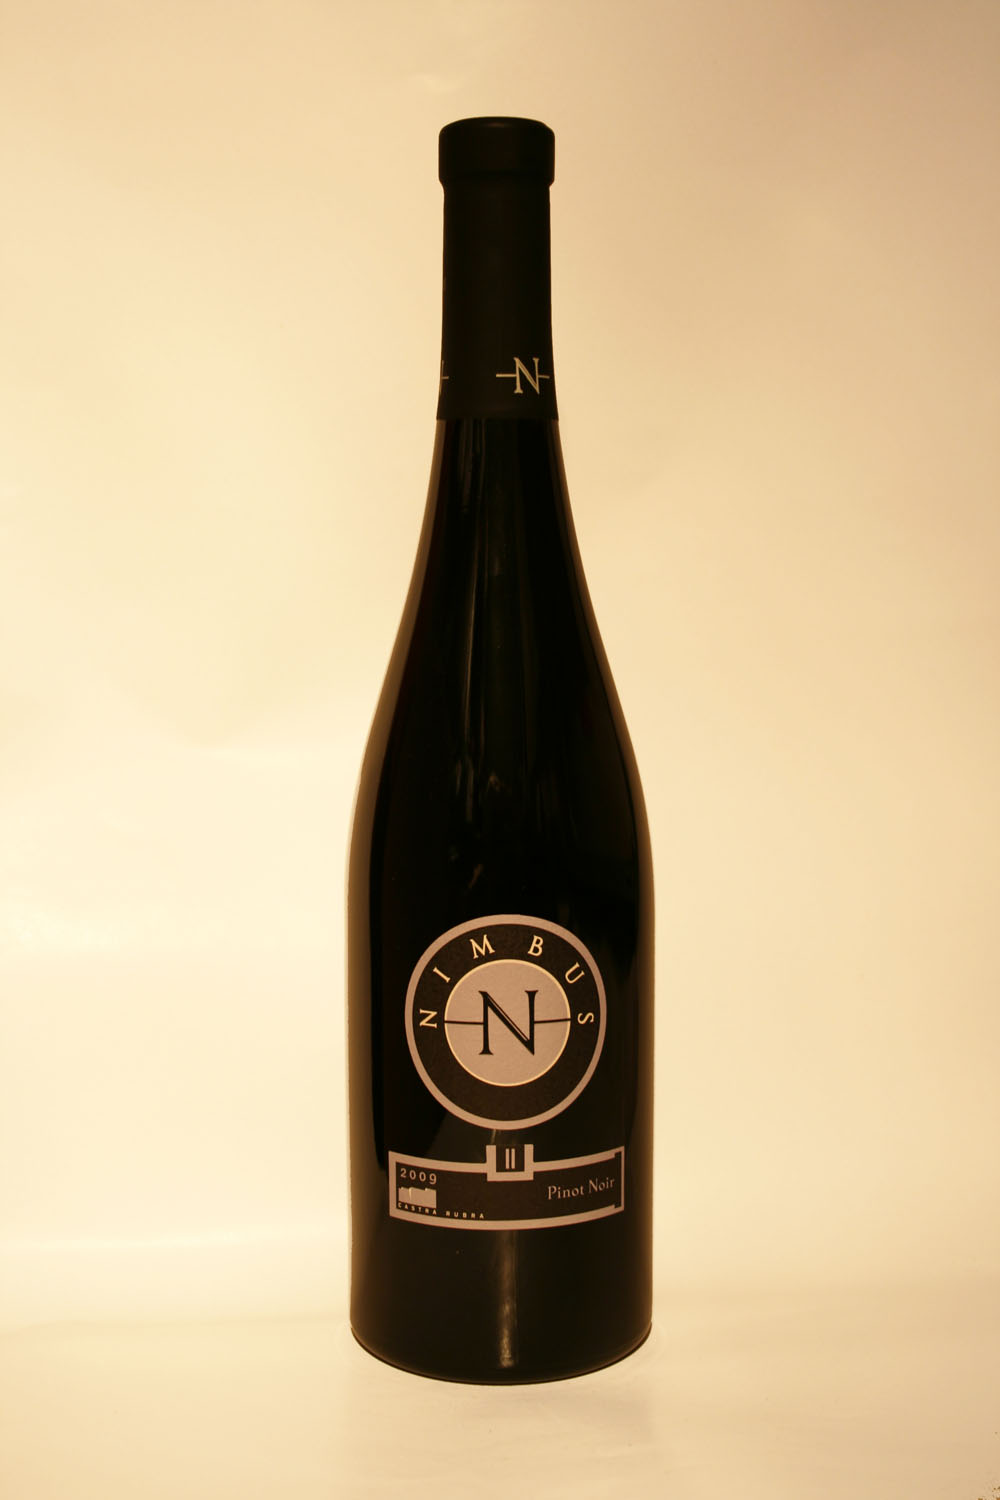 Nimbus Pinot Noir 2009